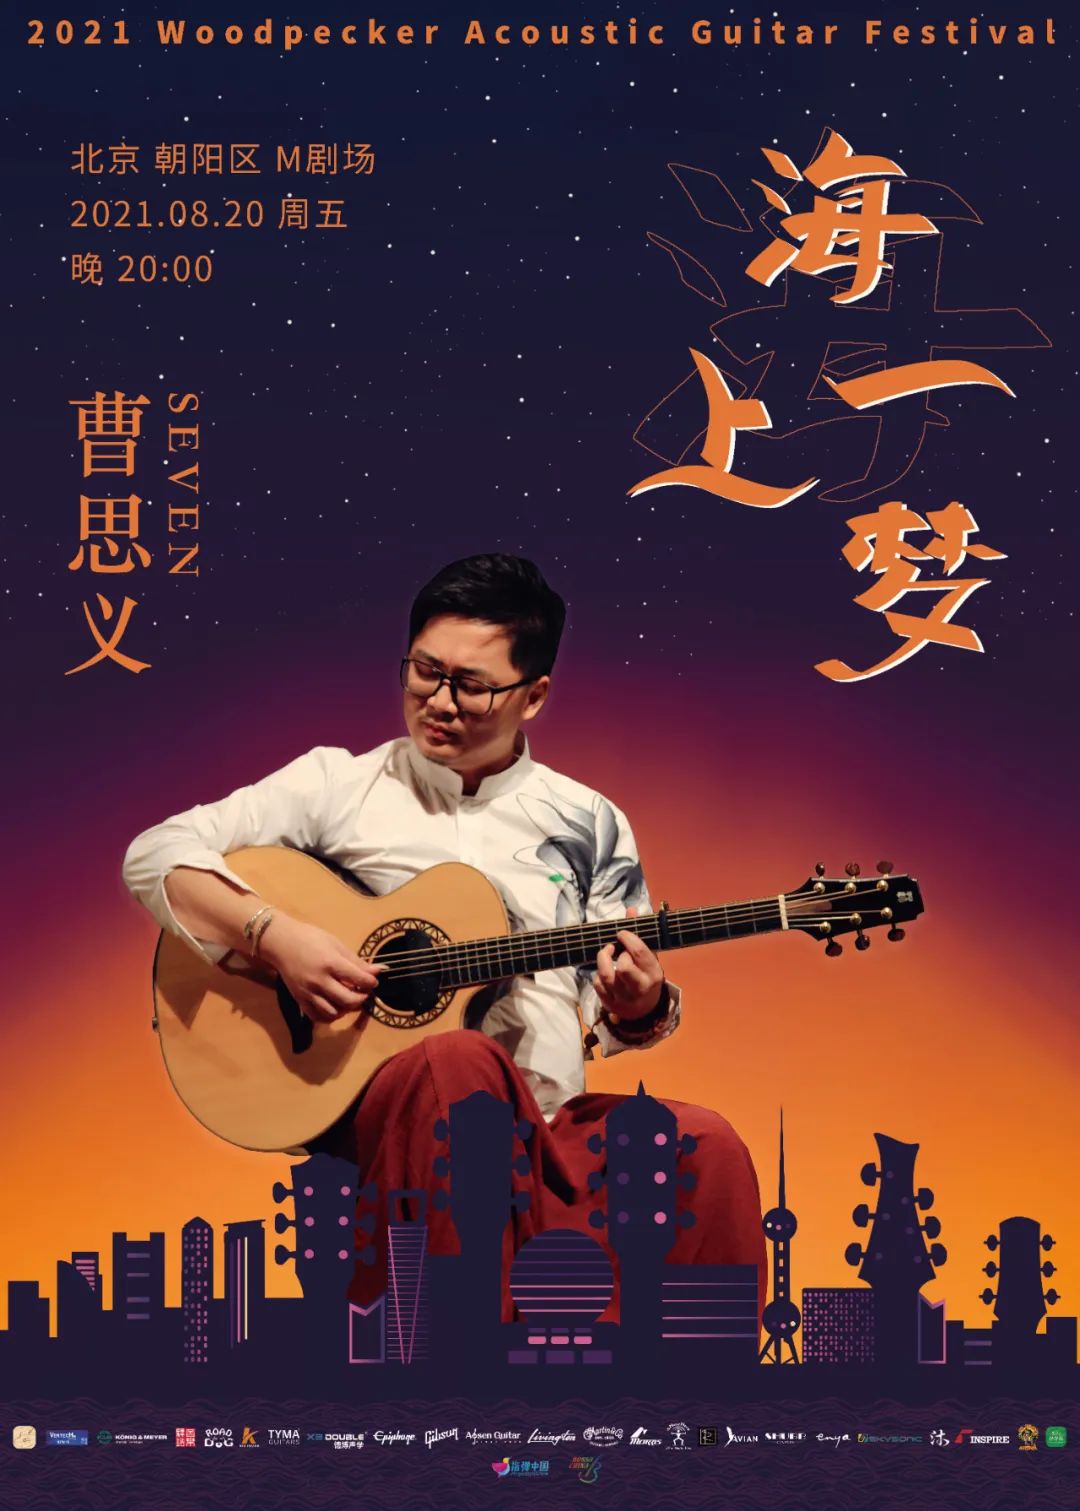 开票｜2021WAGF音乐节《  》吉他音乐会